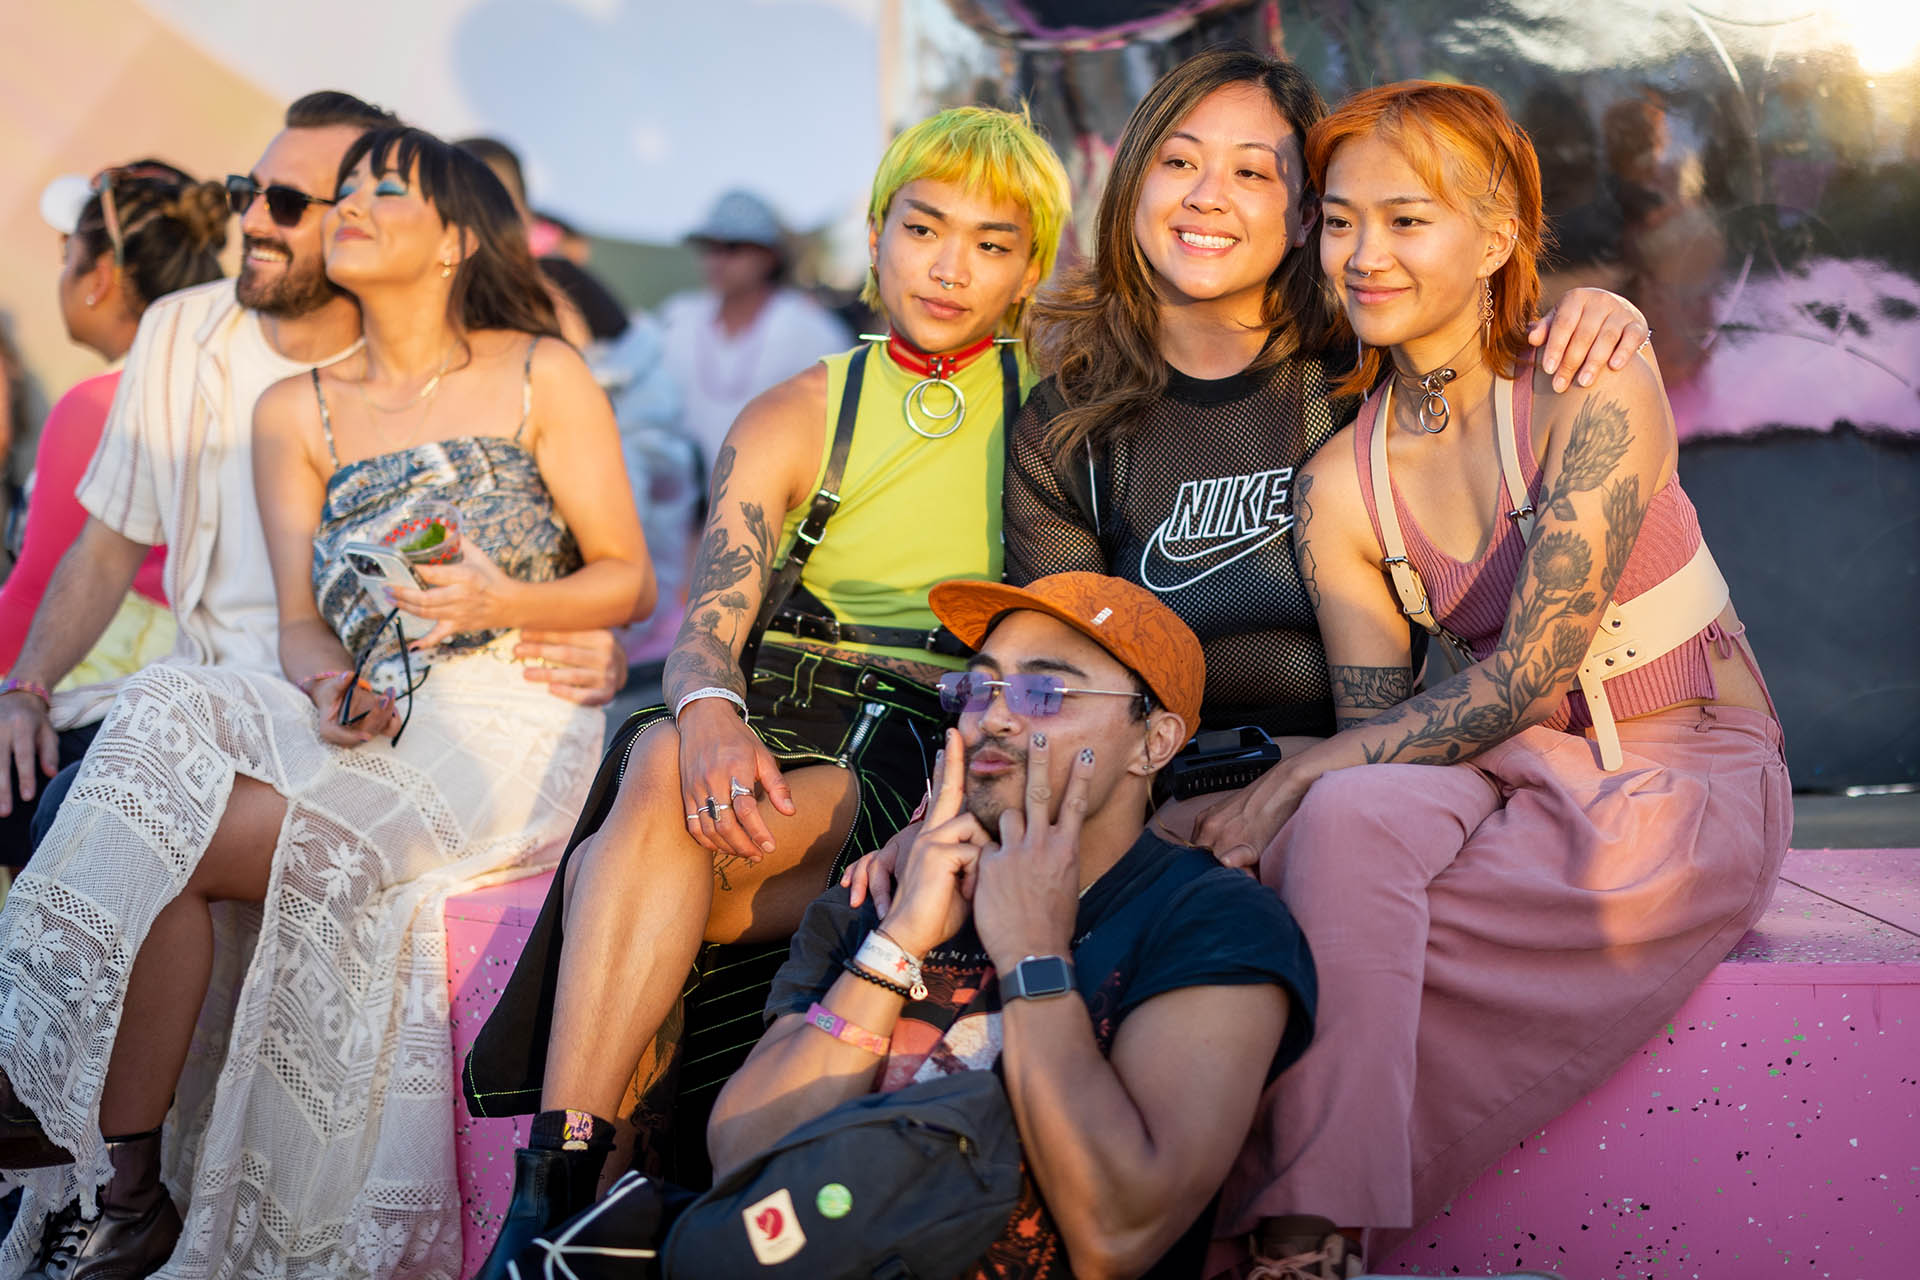 Los looks fueron mayormente coloridos, a tono con el concepto visual que despliegan los jóvenes en la actualidad: alegría y optimismo son las principales características (Photo by Emma McIntyre/Getty Images for Coachella)